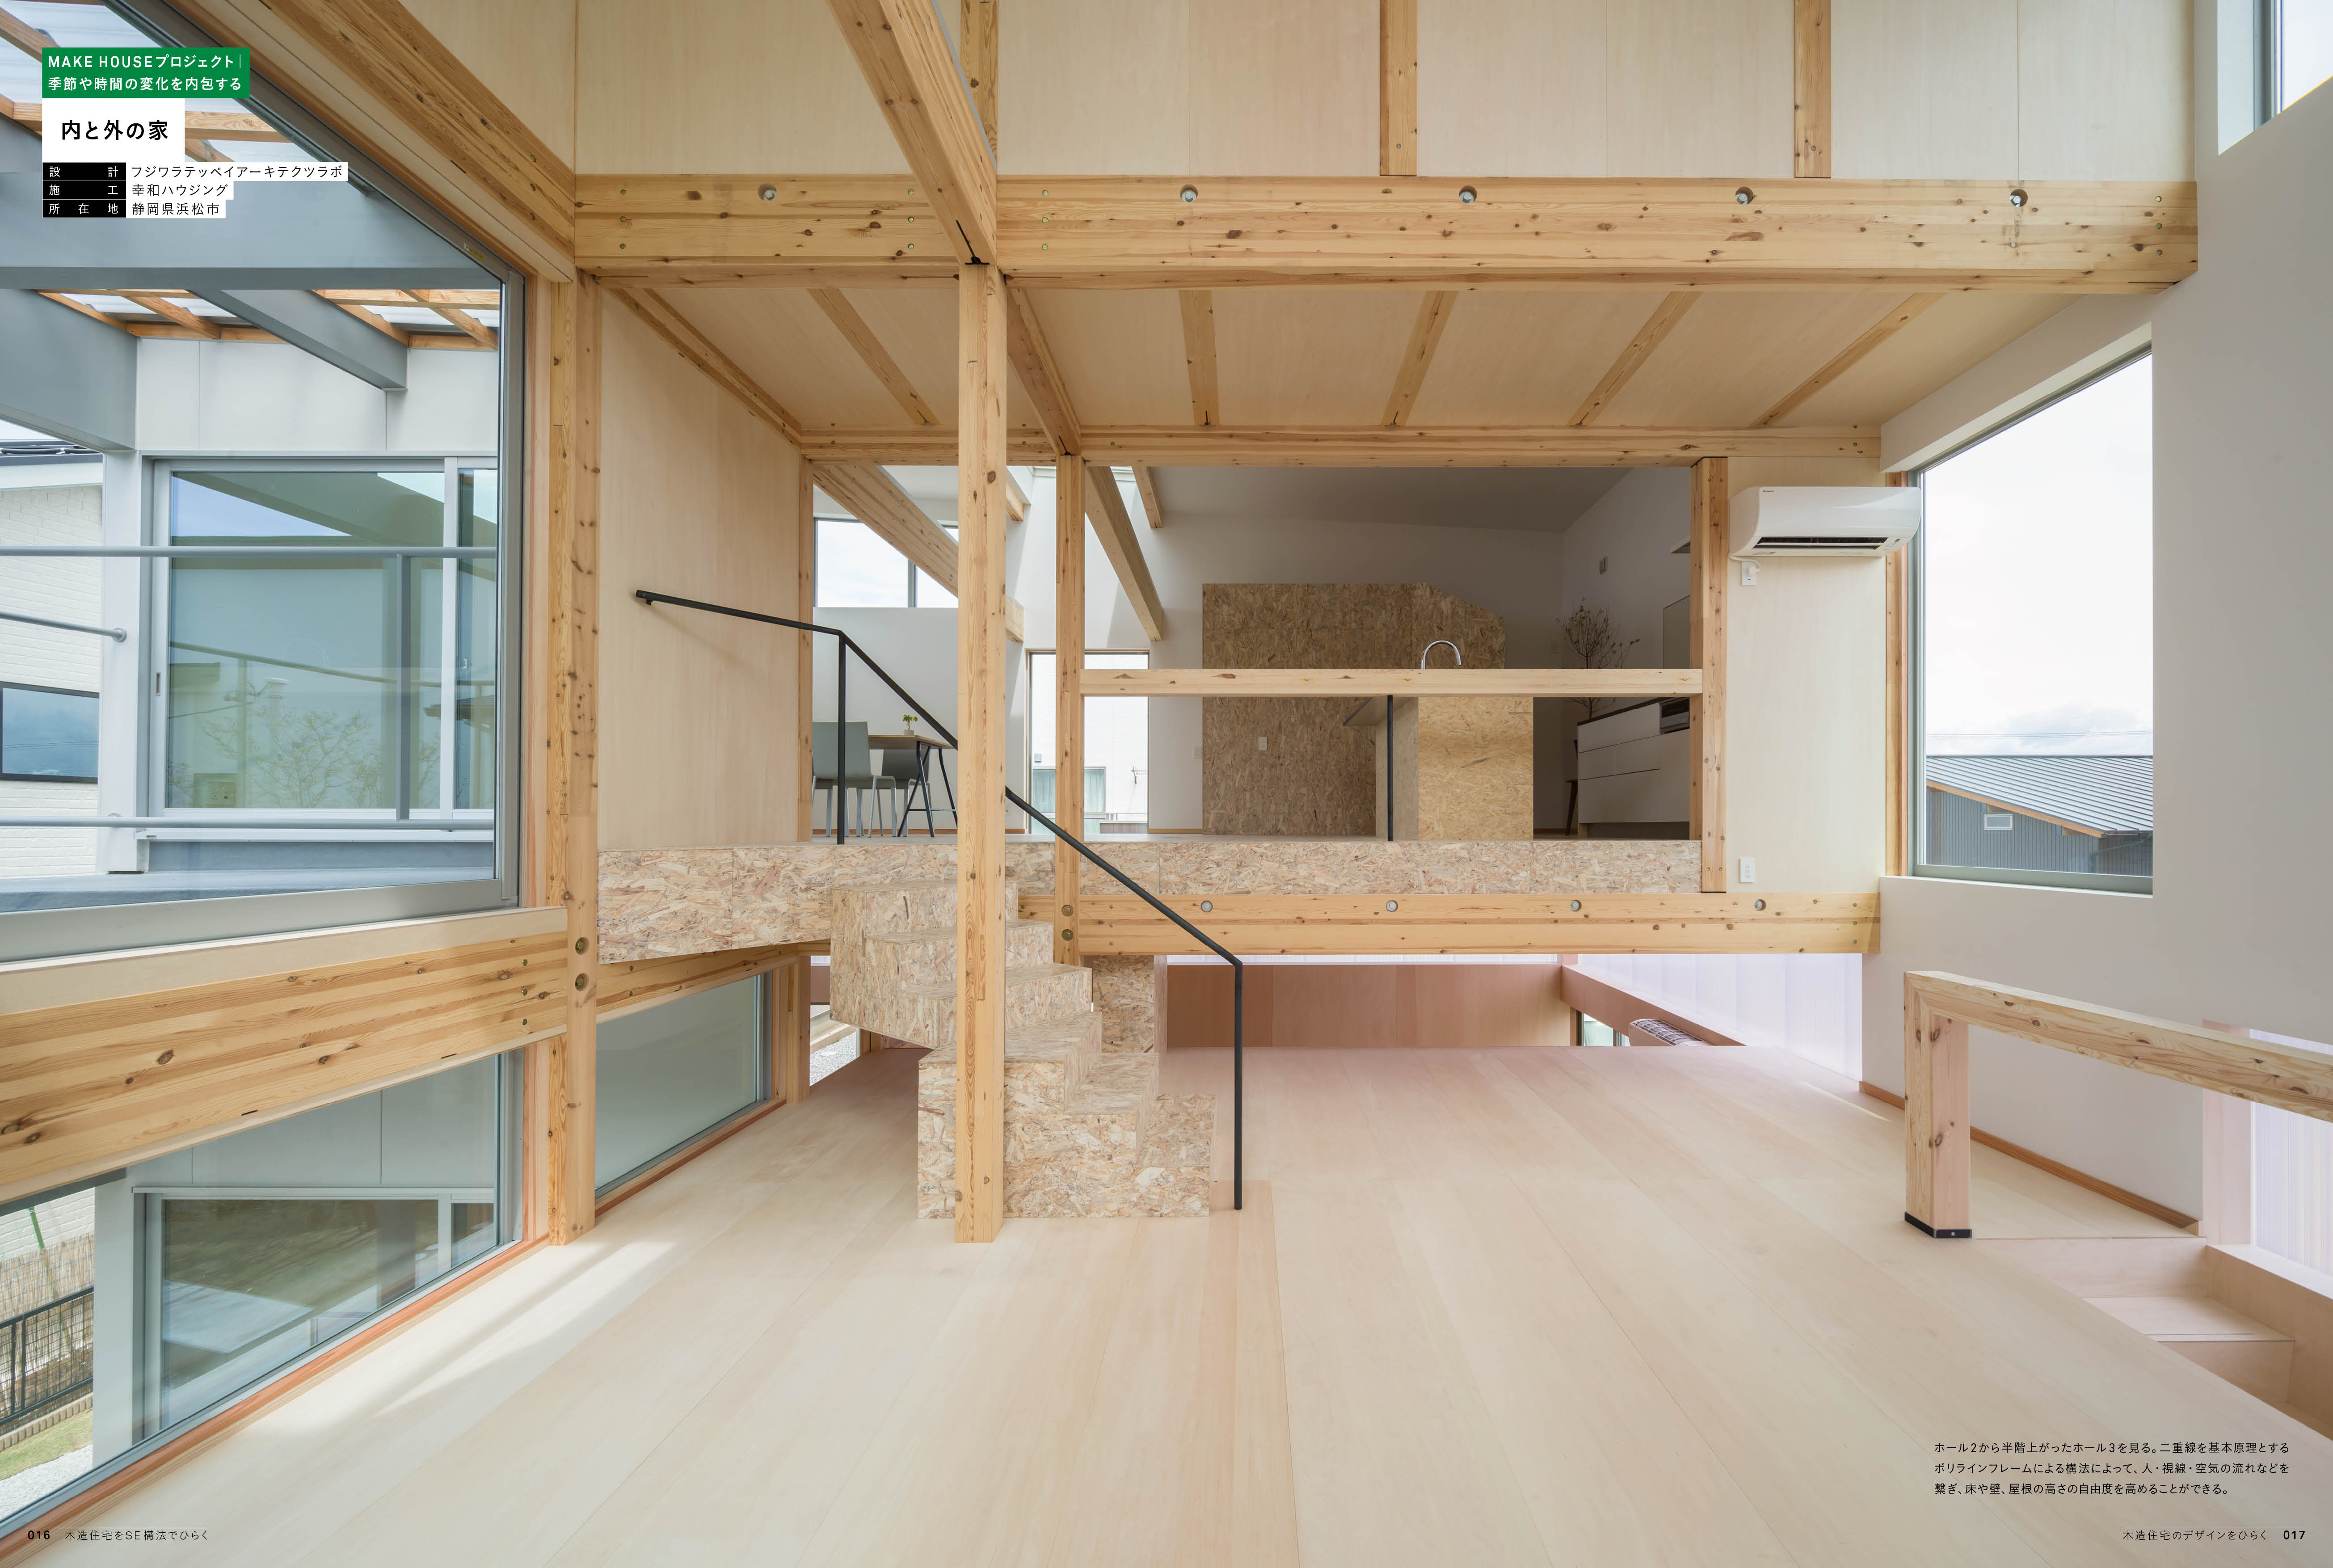 新建築住宅特集別冊 木造住宅をｓｅ構法でひらく 発売開始 Ncnのプレスリリース